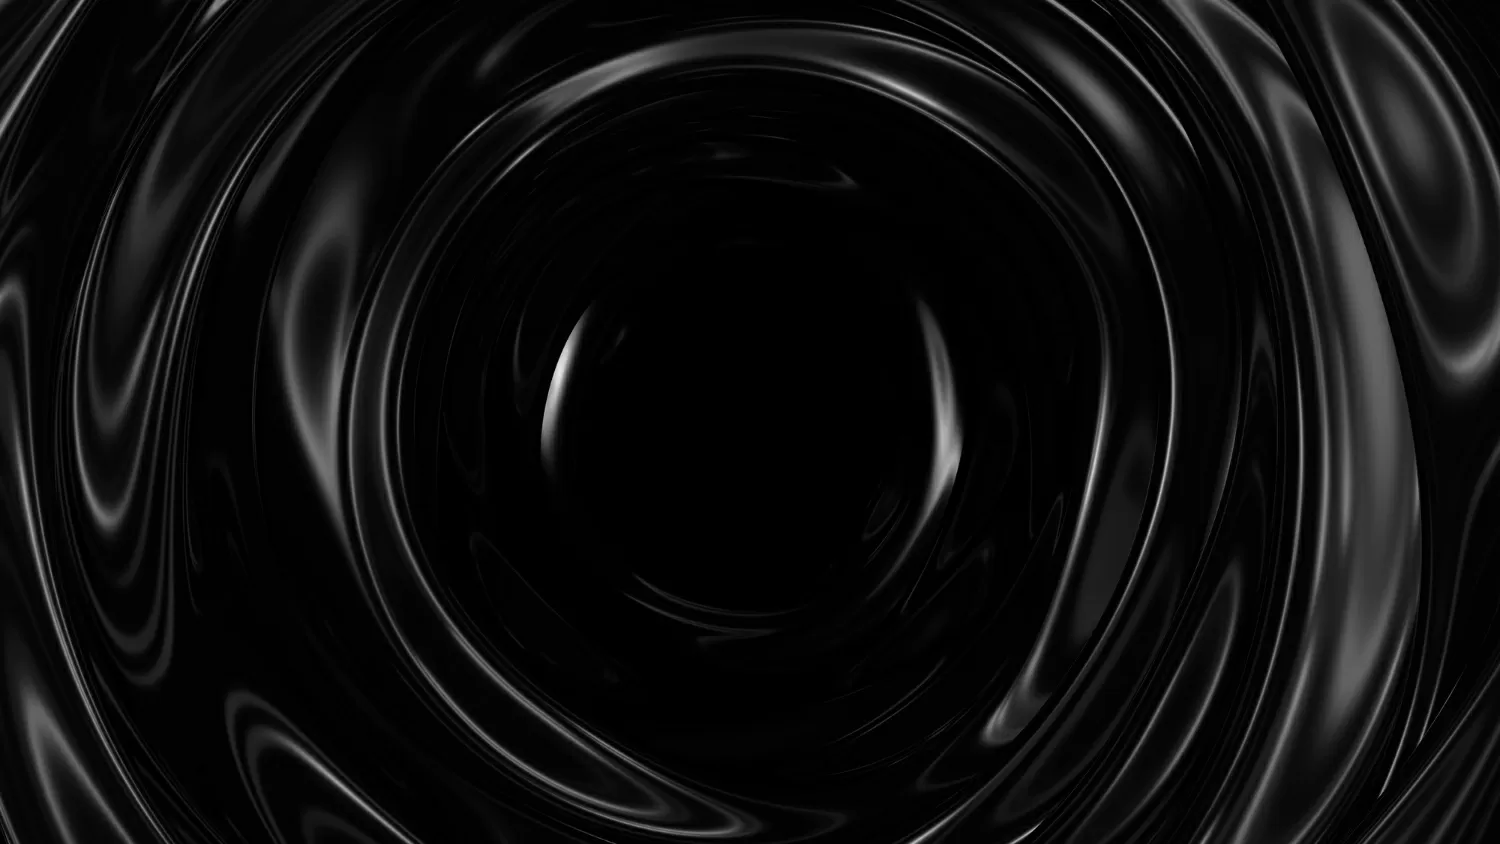 Superficie scura con riflessi sfondo liscio minimo onde nere tunnel di onde di seta sfocate flusso di increspature minime in scala di grigi illustrazione di rendering 3d